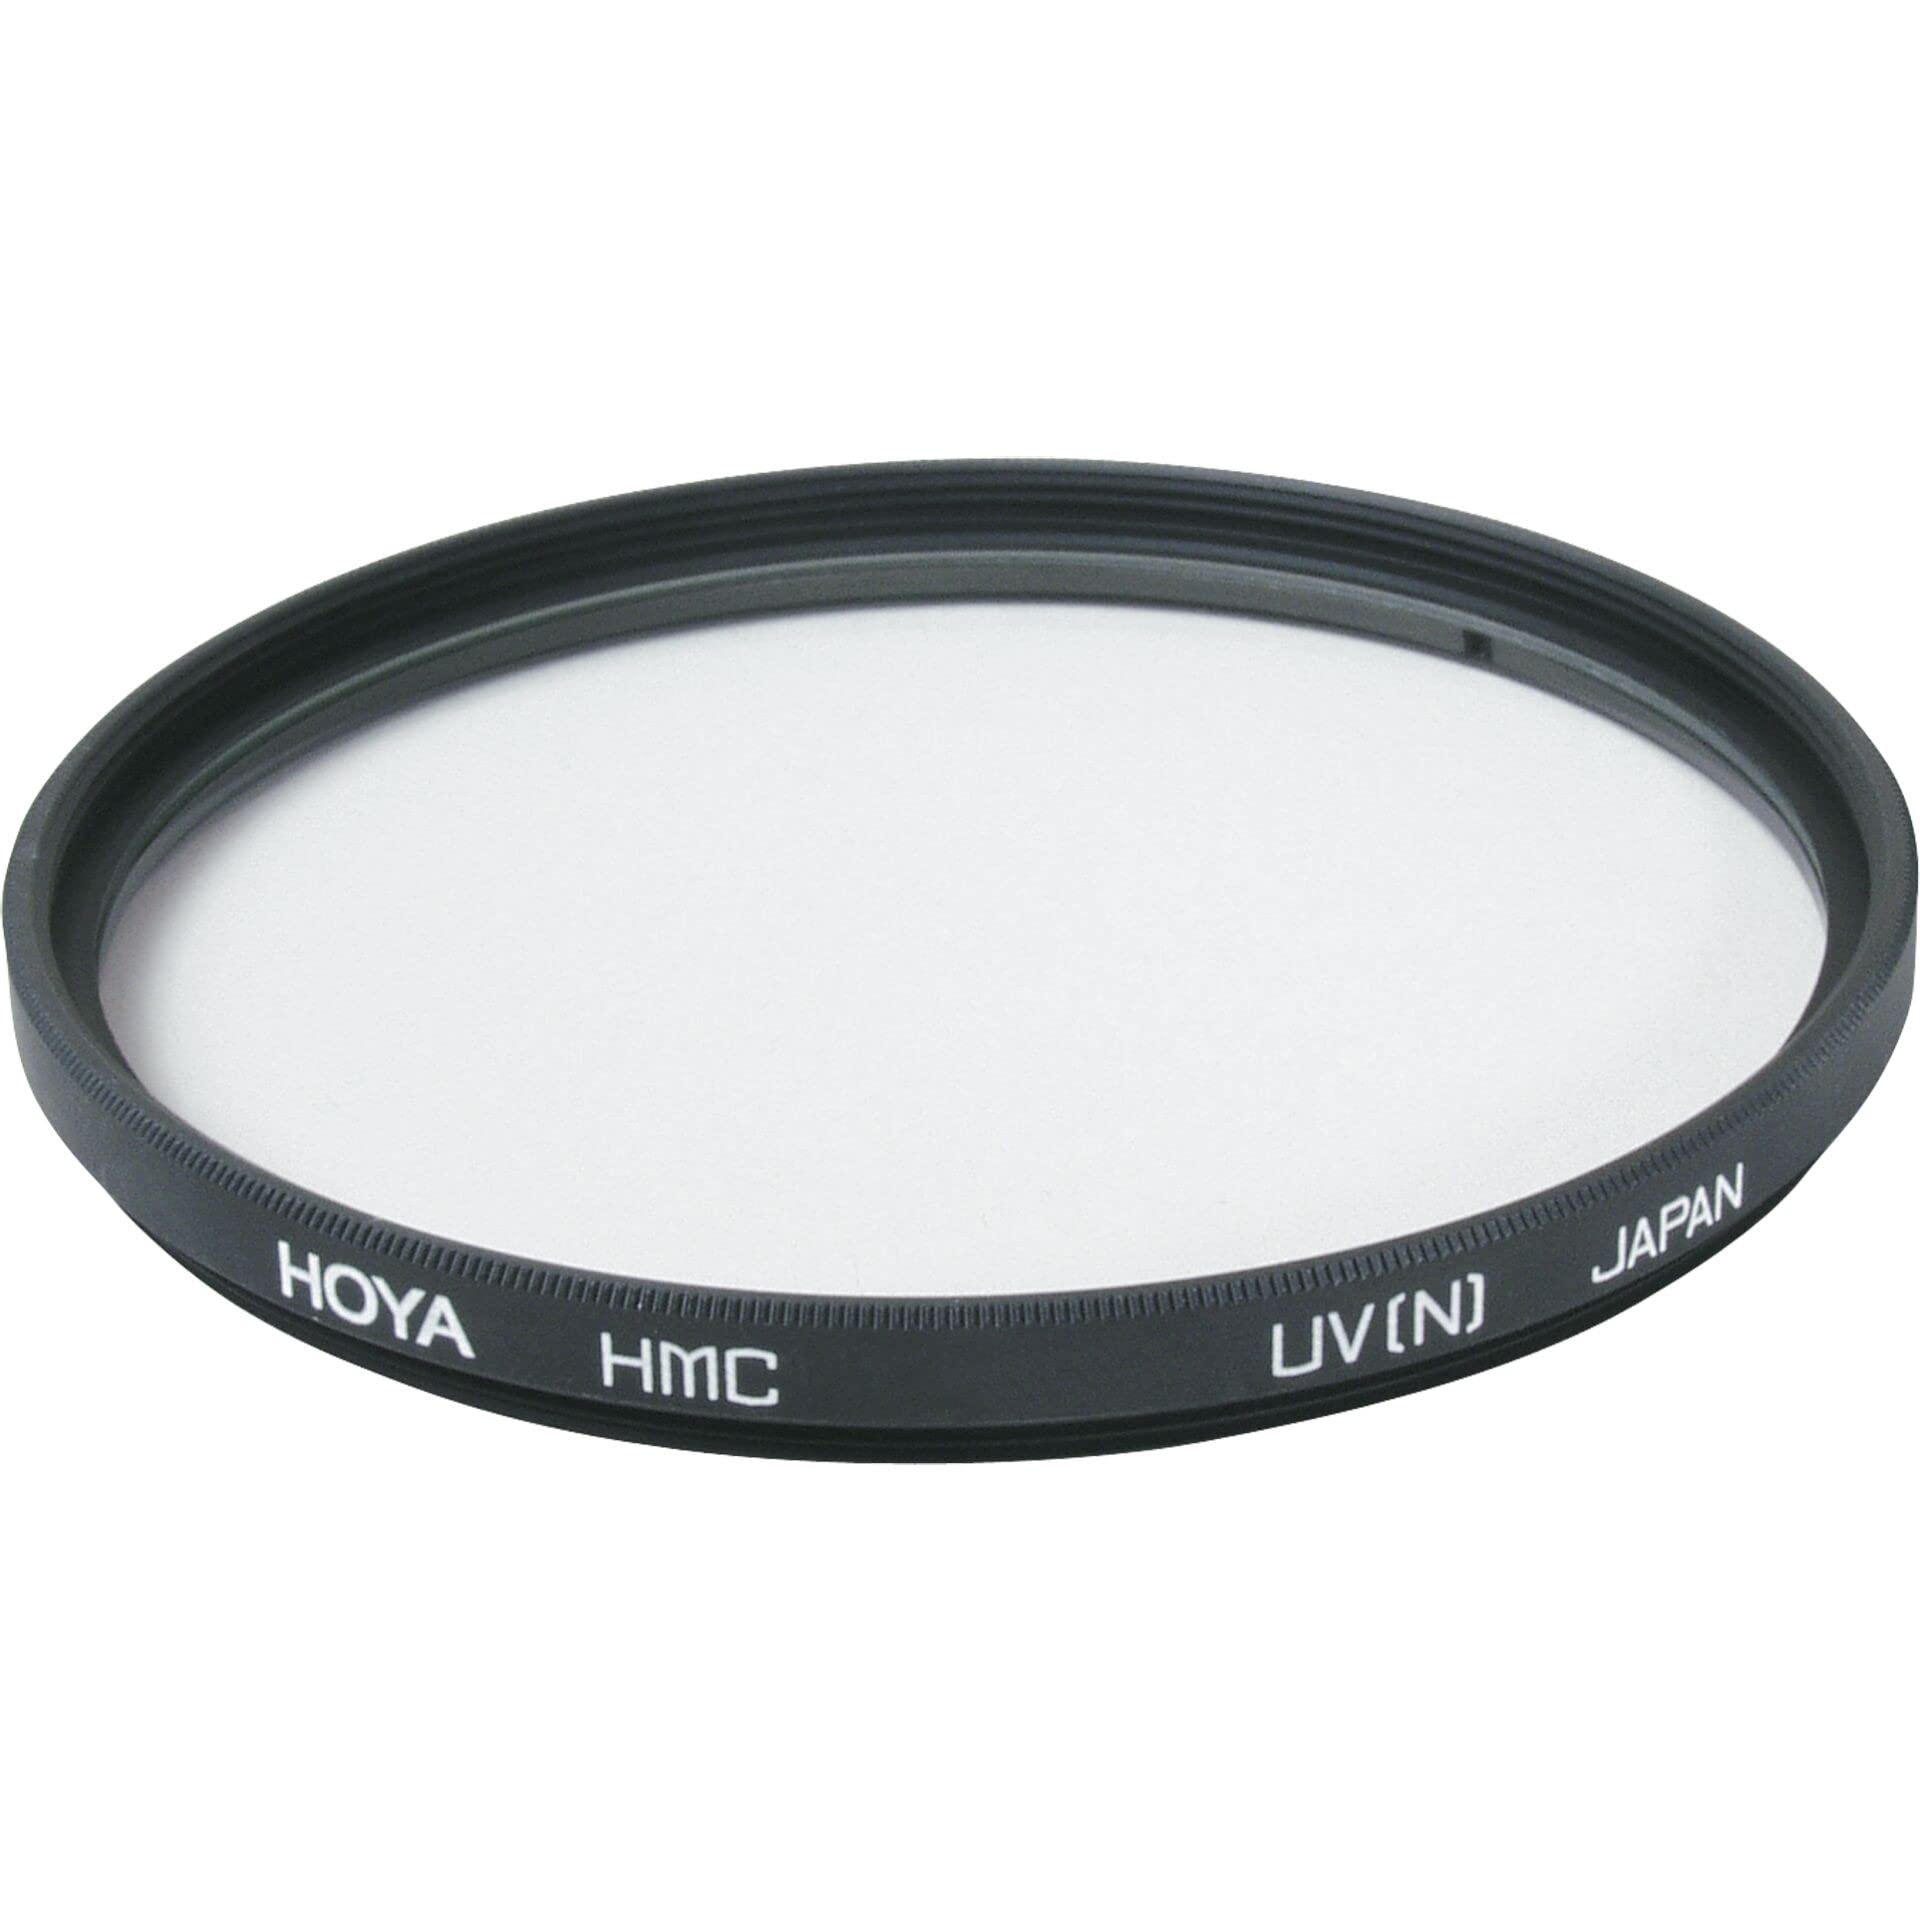 Hoya HMC UV-Filter (86mm)